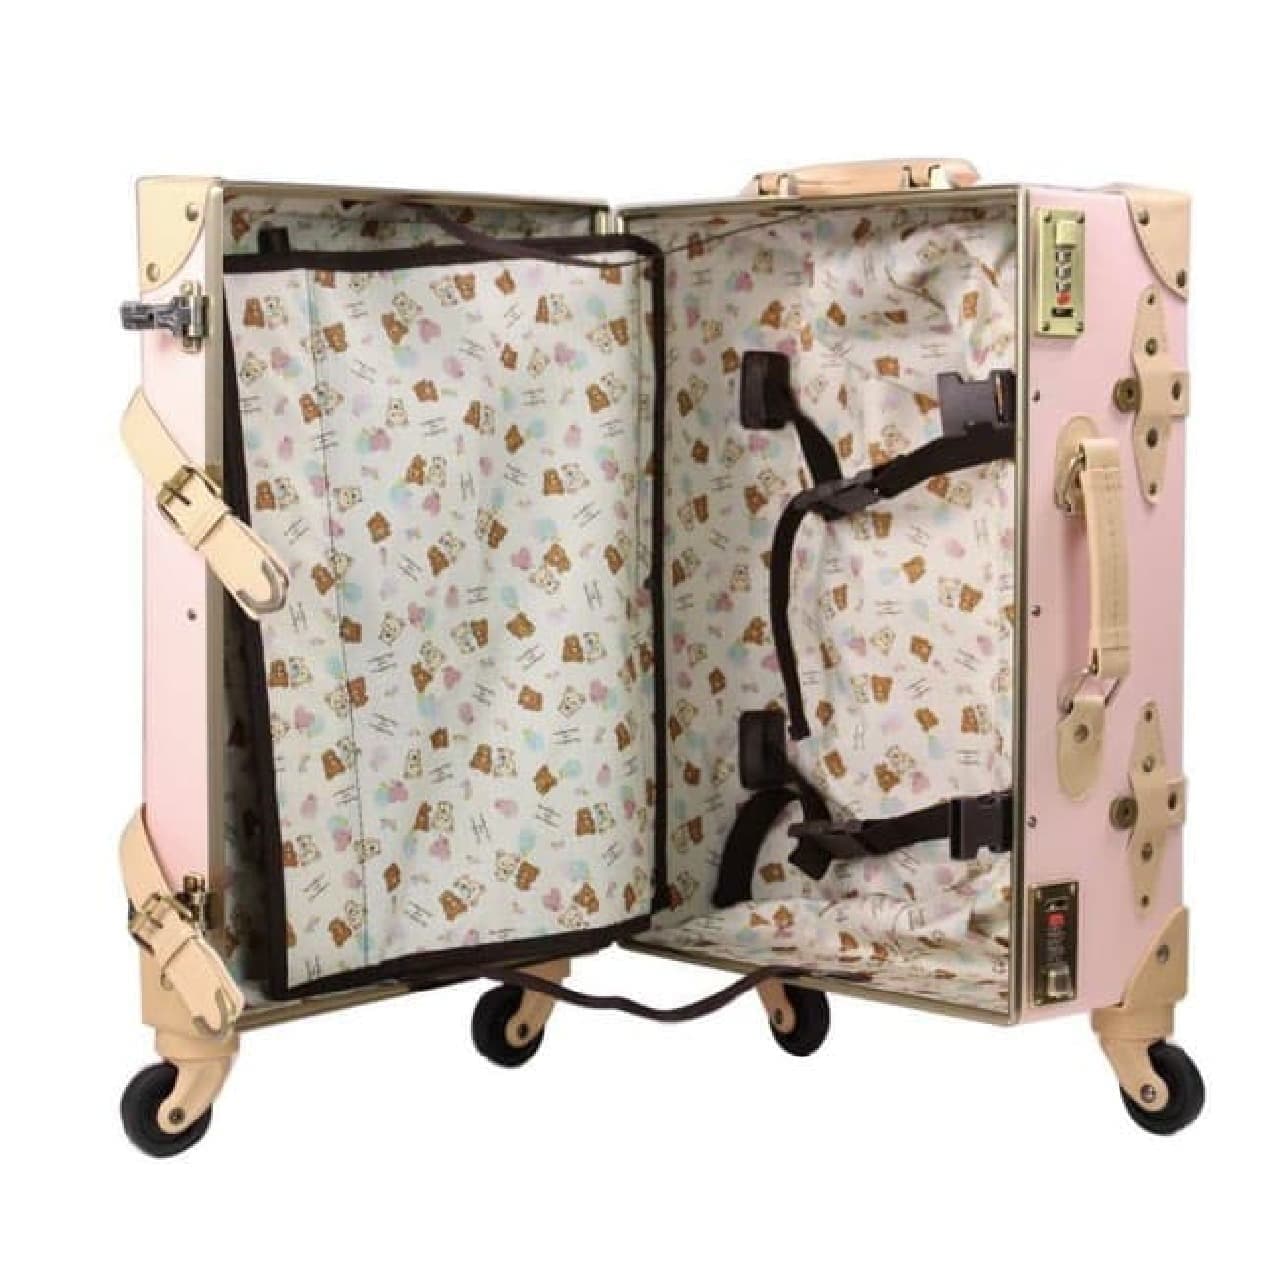 Korilakkuma Kiiroitori pattern suitcase in Villevan --Lightweight carry-on size